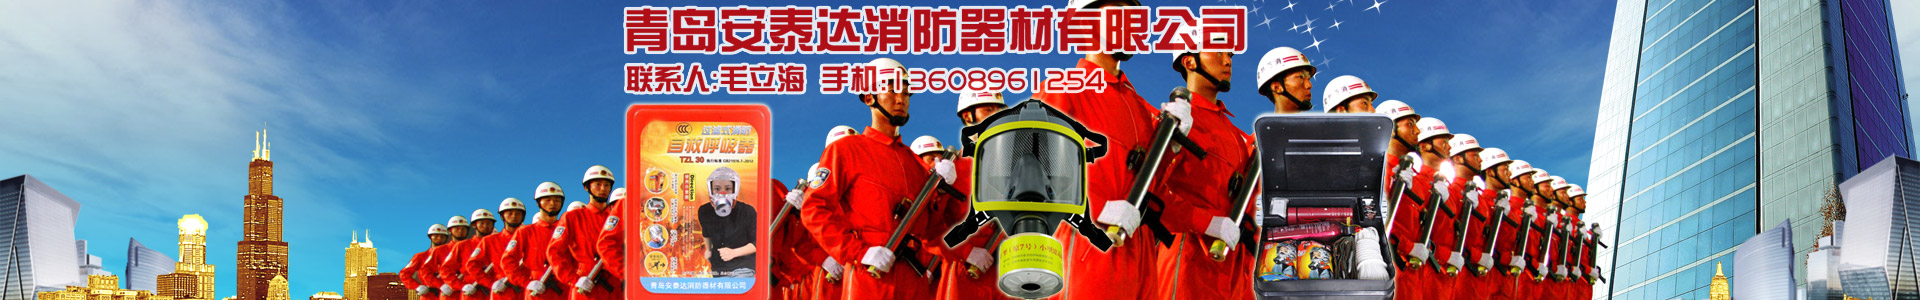 破拆工具系列-青島安泰達消防器材有限公司-